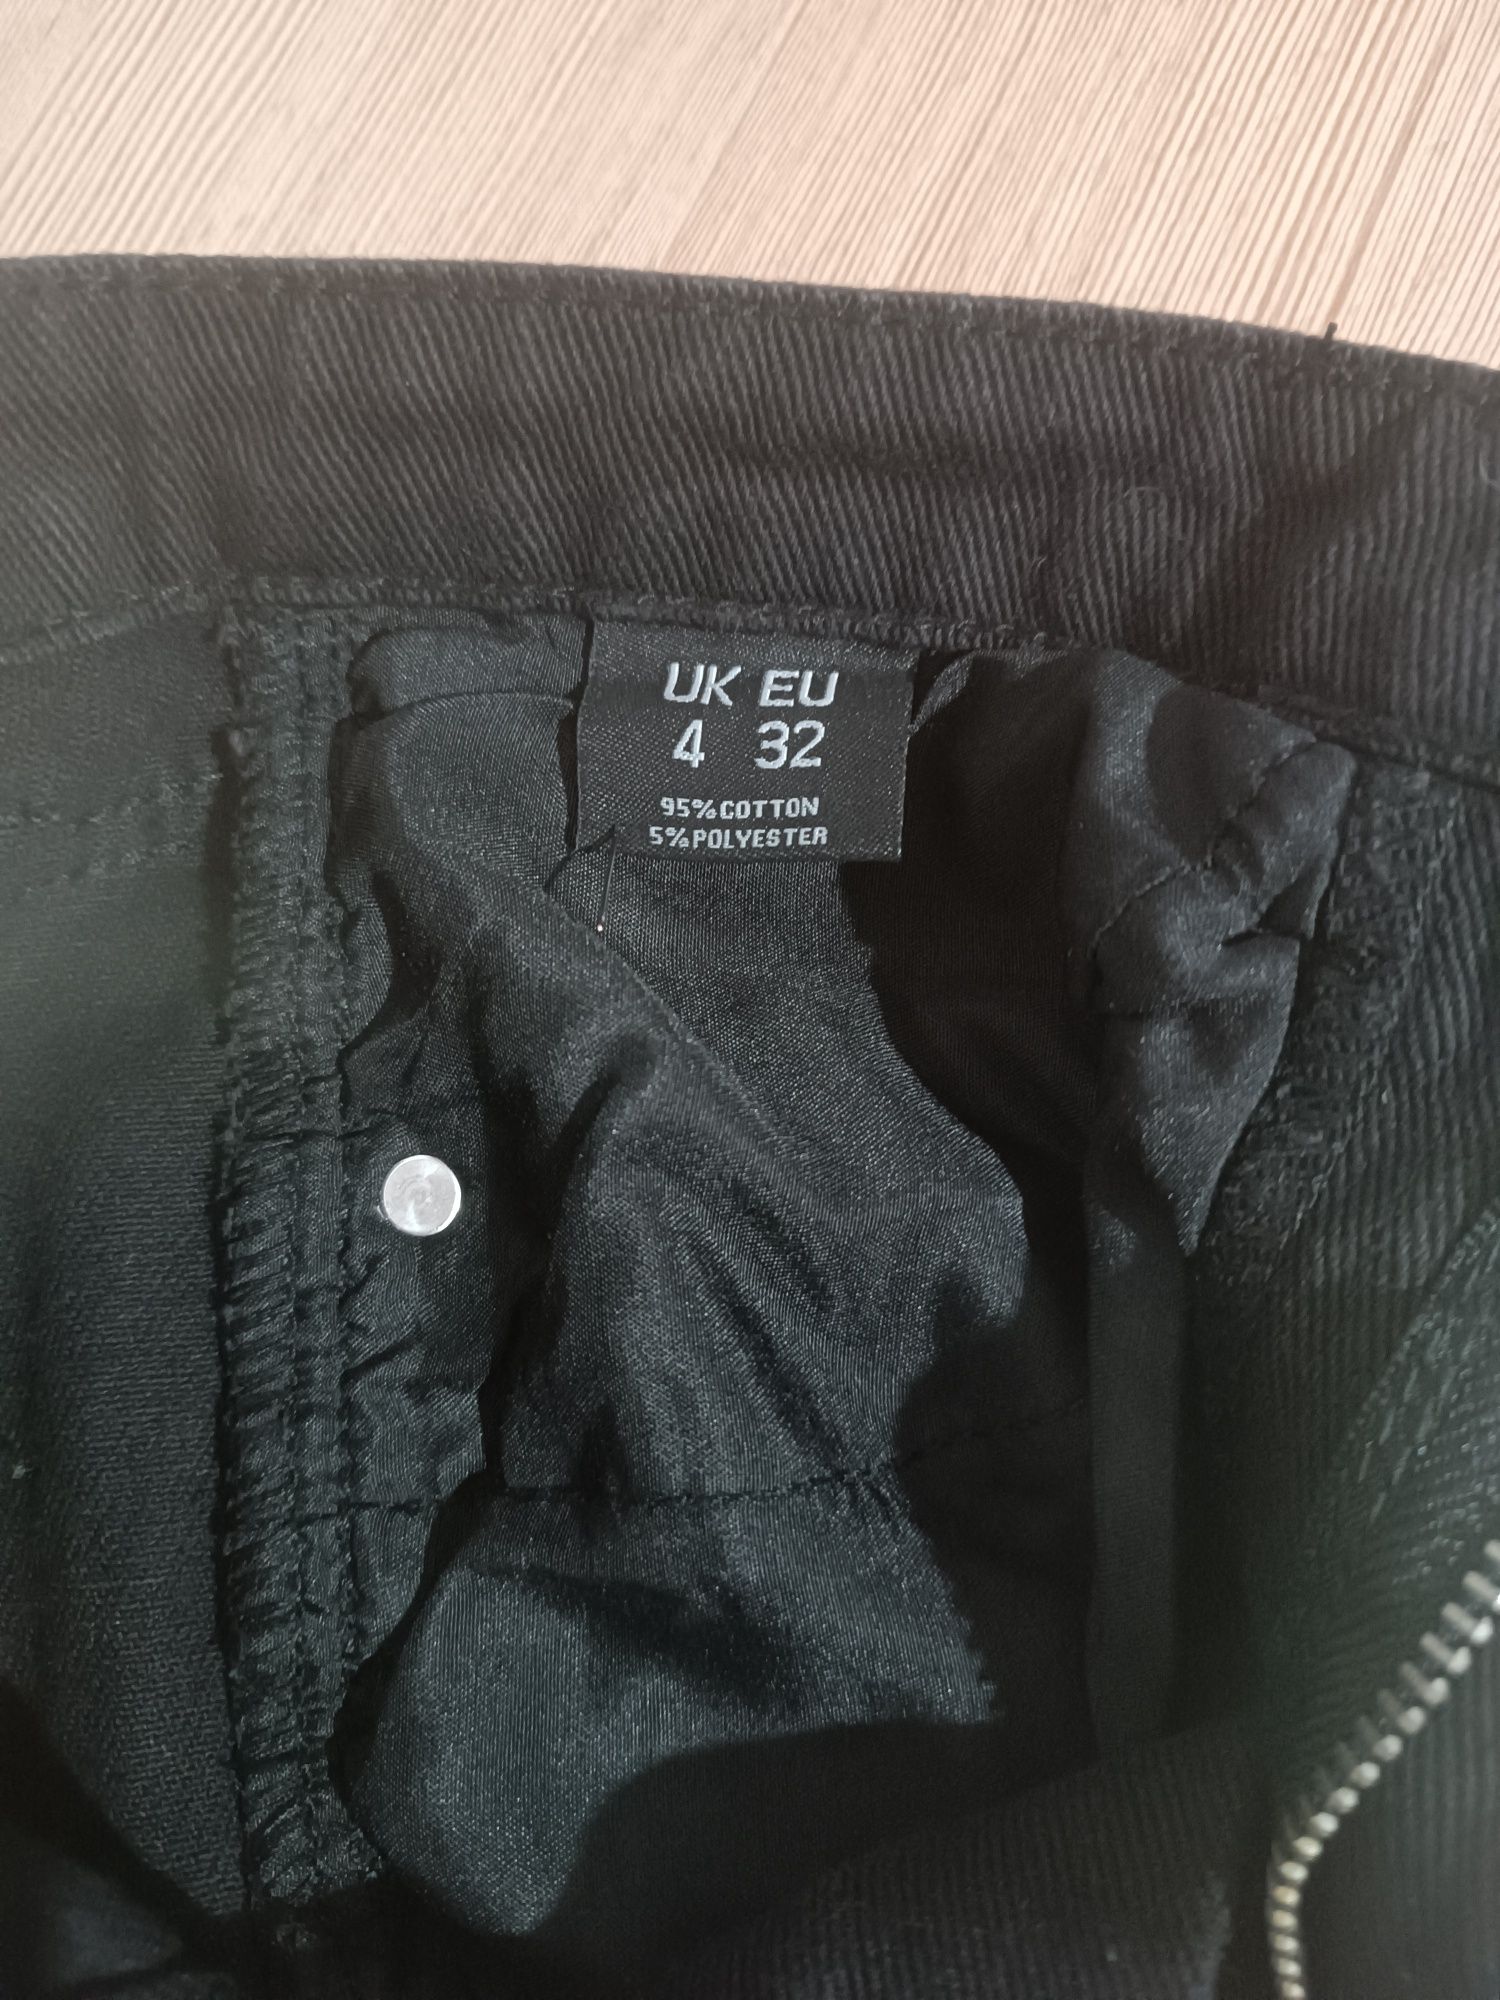 Czarna jeansowa spódnica Pretty Little Thing nowa rozmiar 32/34